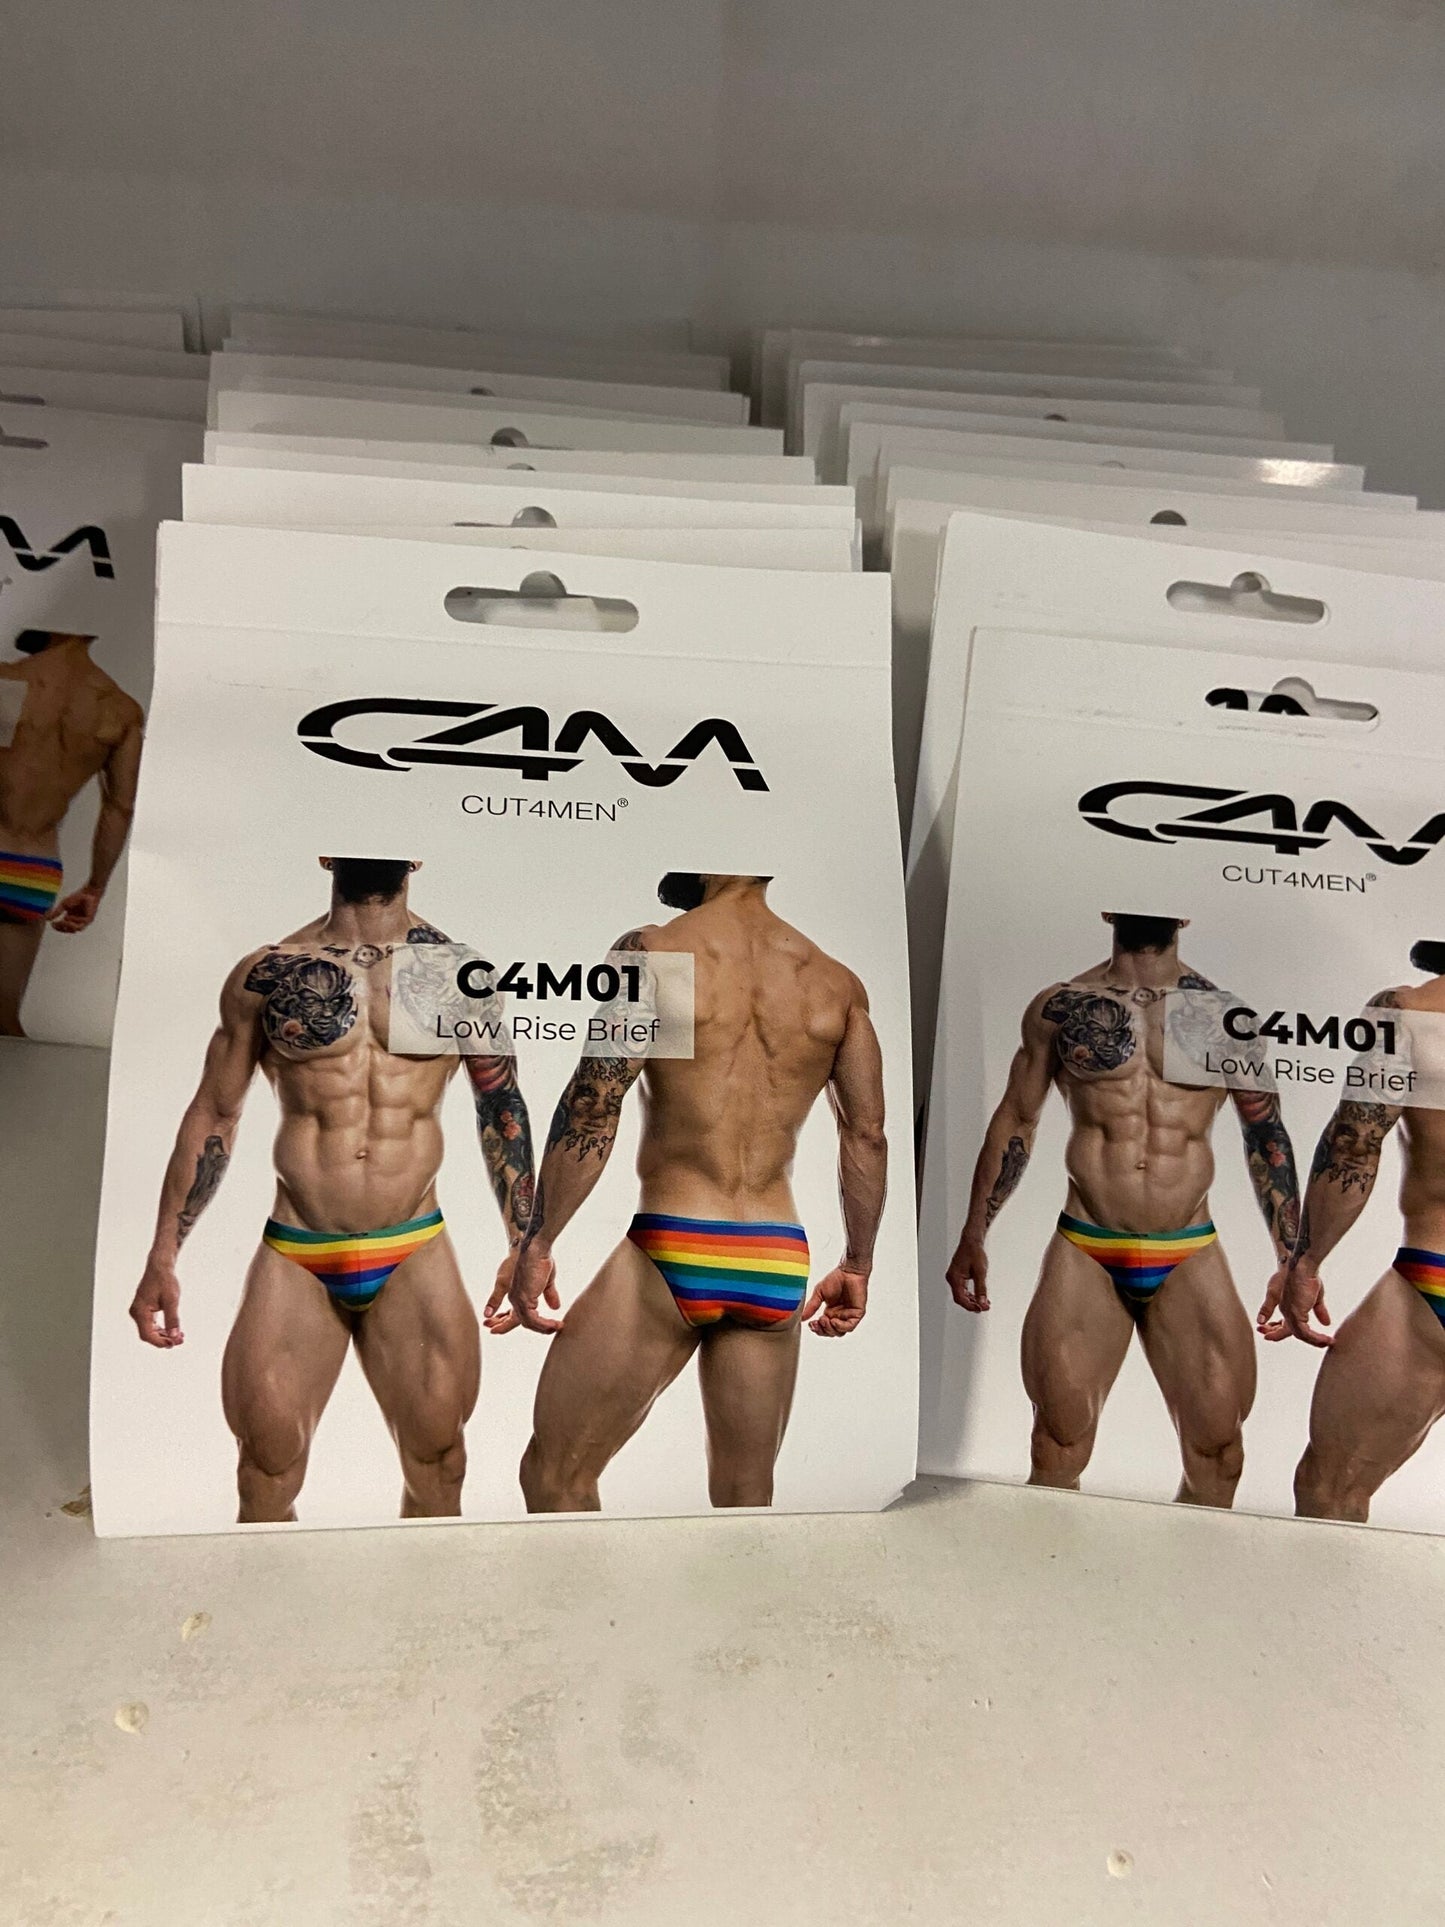 CUT4MEN - C4M12 - Briefkini Men Underwear - Rainbow - 4 Sizes - 1 Piece